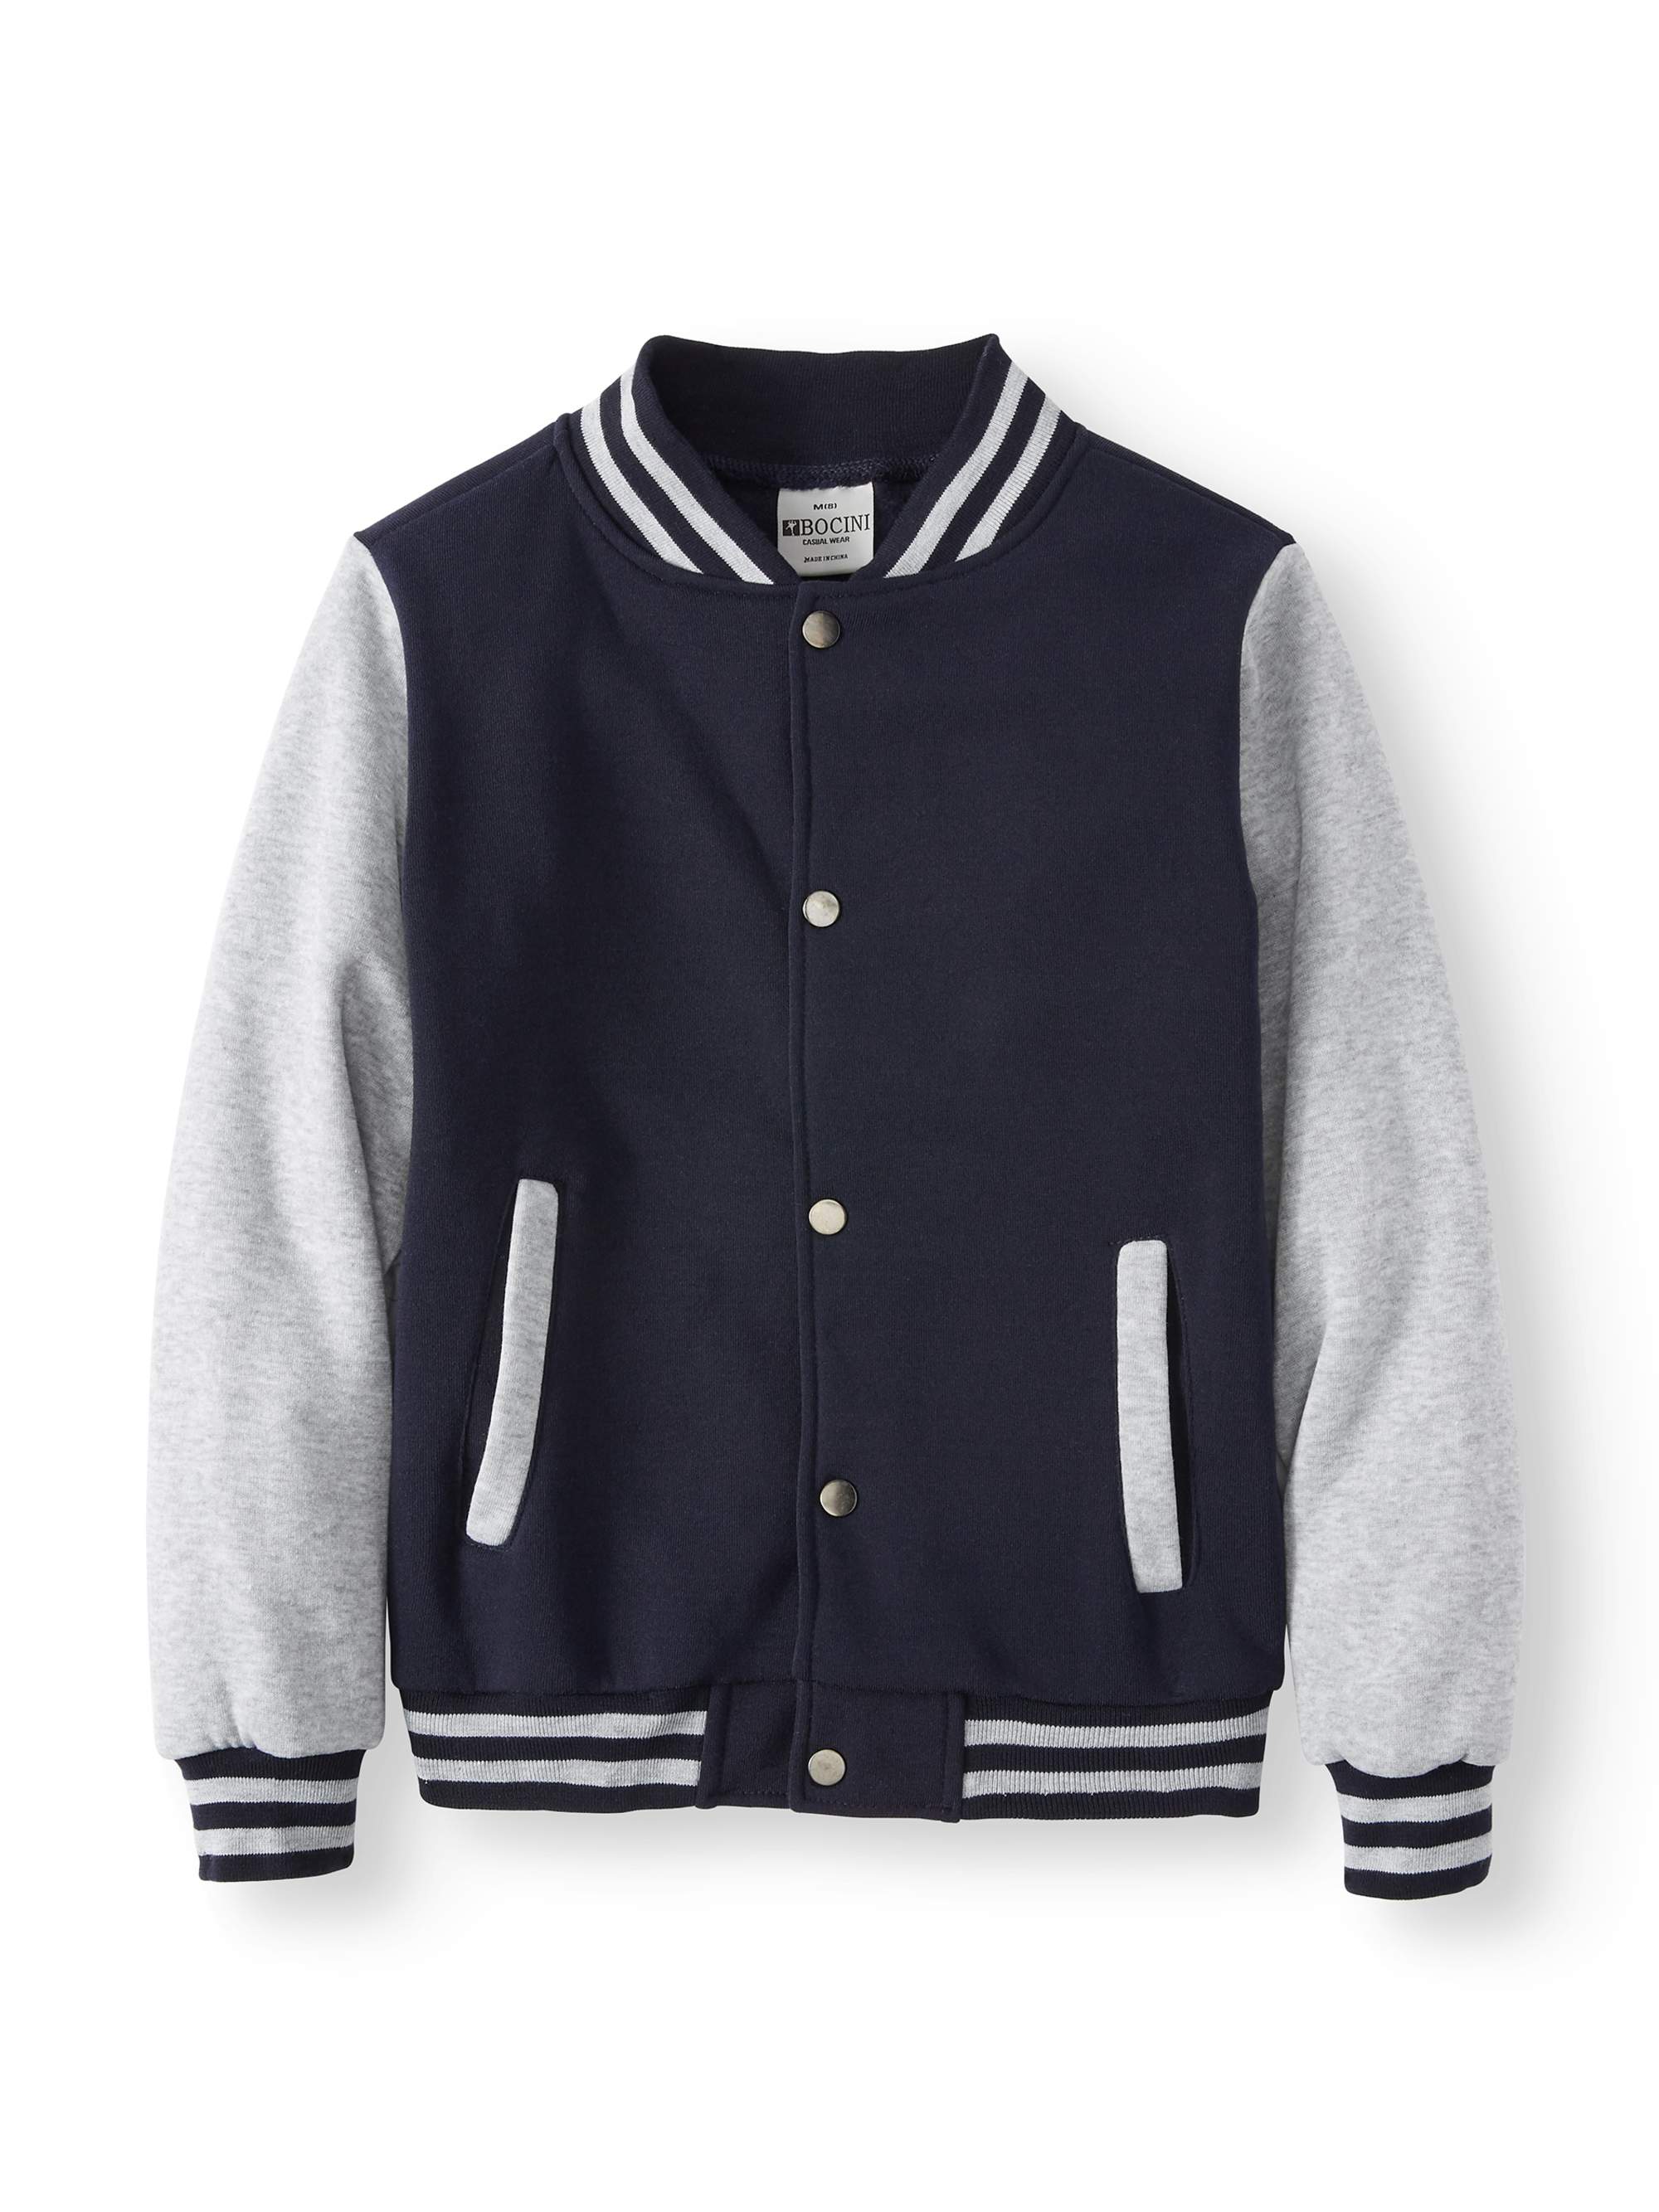 Bocini Boys Unlined Fleece Varsity Jackets, Sizes 6-16 - image 1 of 3